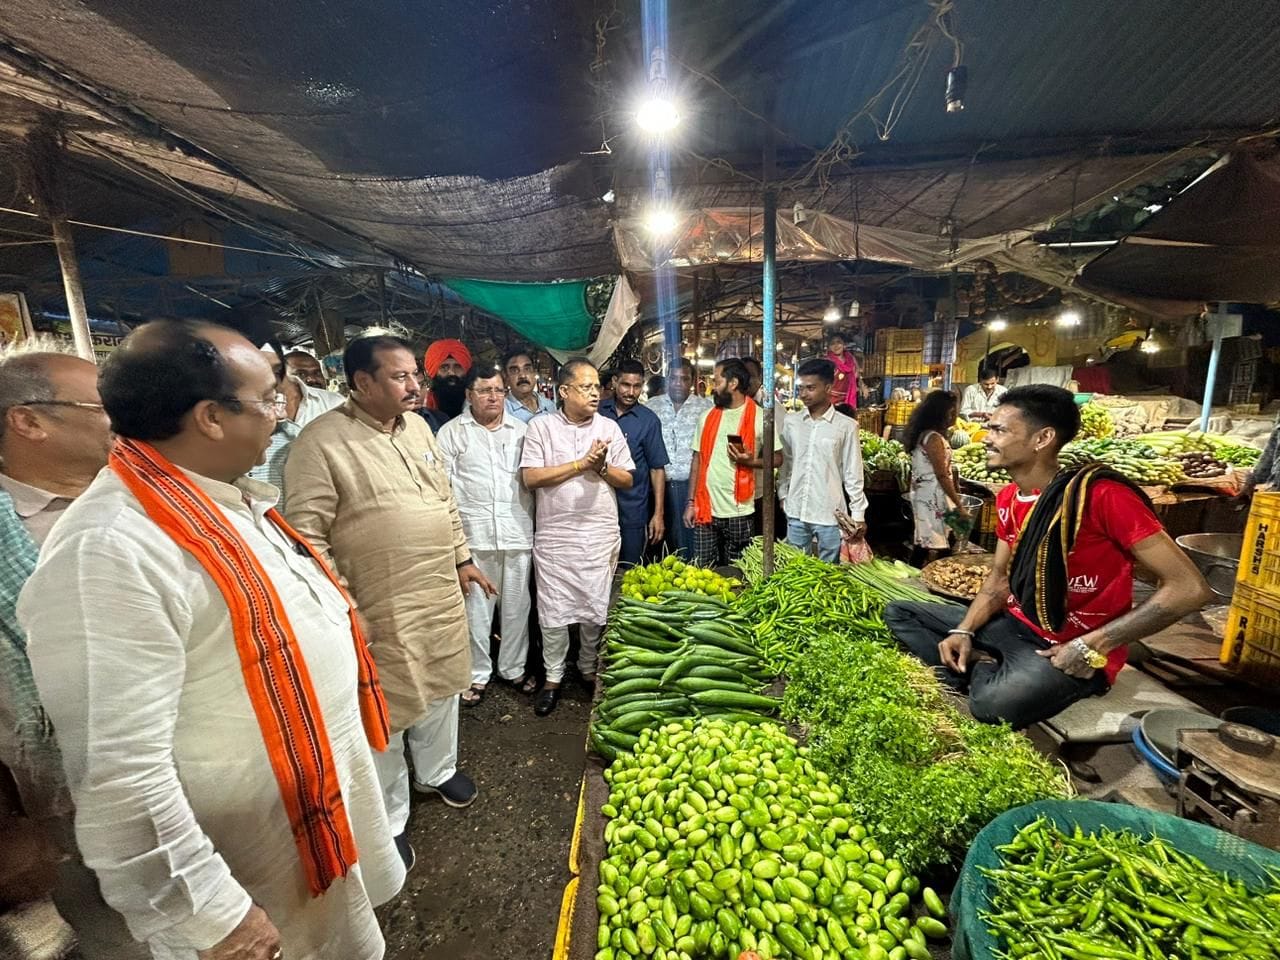 बिलासपुर विधानसभा क्षेत्र के अंतर्गत स्थित बृहस्पति सब्जी बाज़ार में सब्जी विक्रेताओं से मिलकर घोषणा